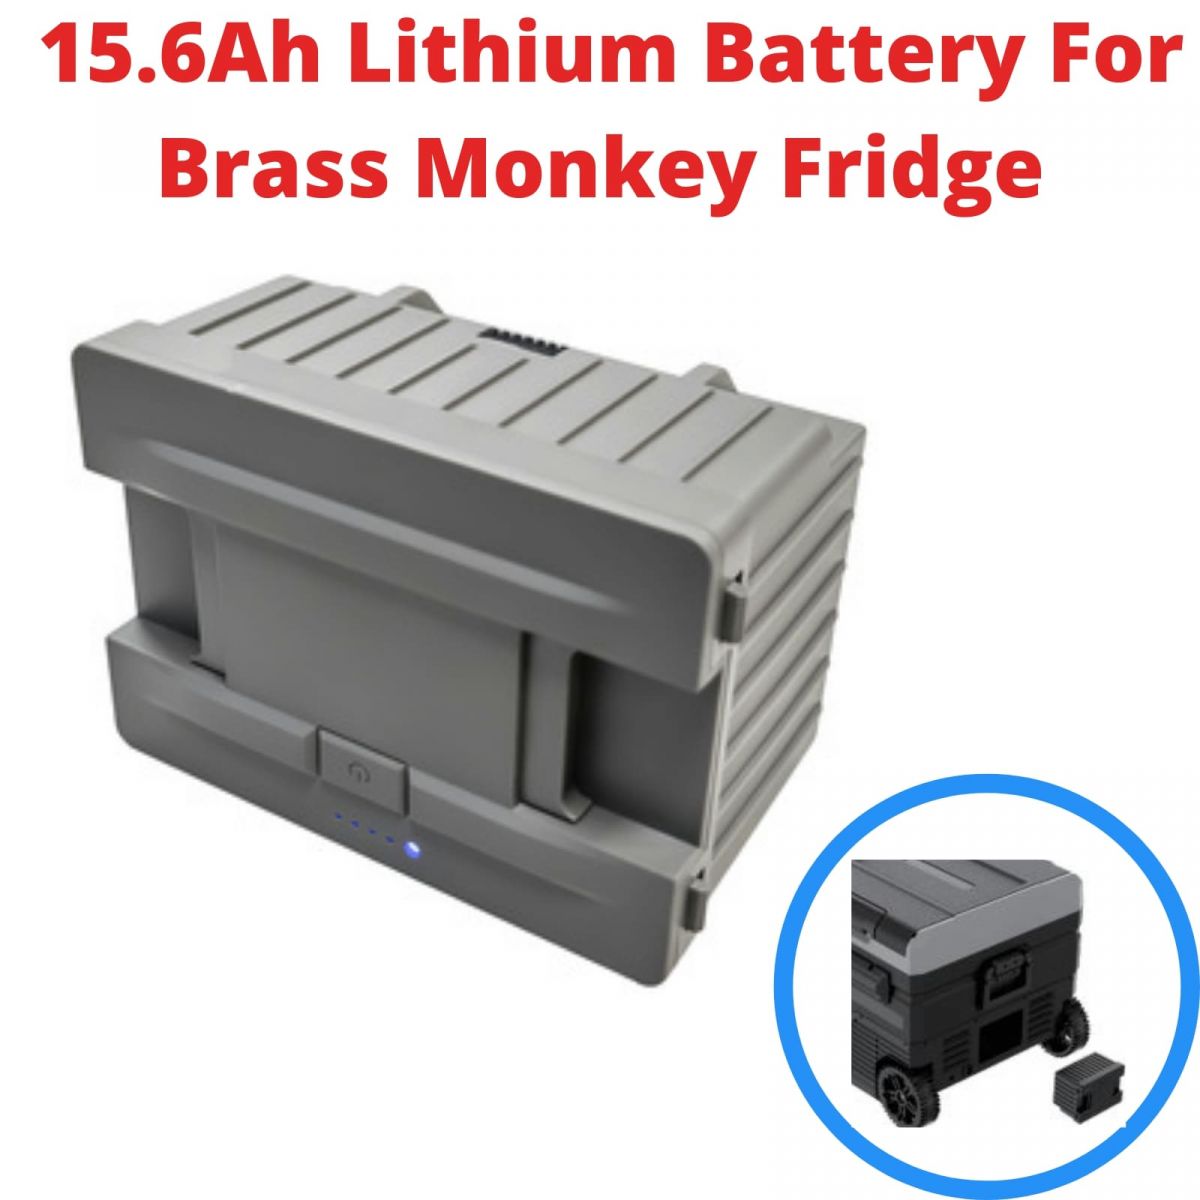 removable battery For Brass Monkey, Brass Monkey power pack, fridge battery